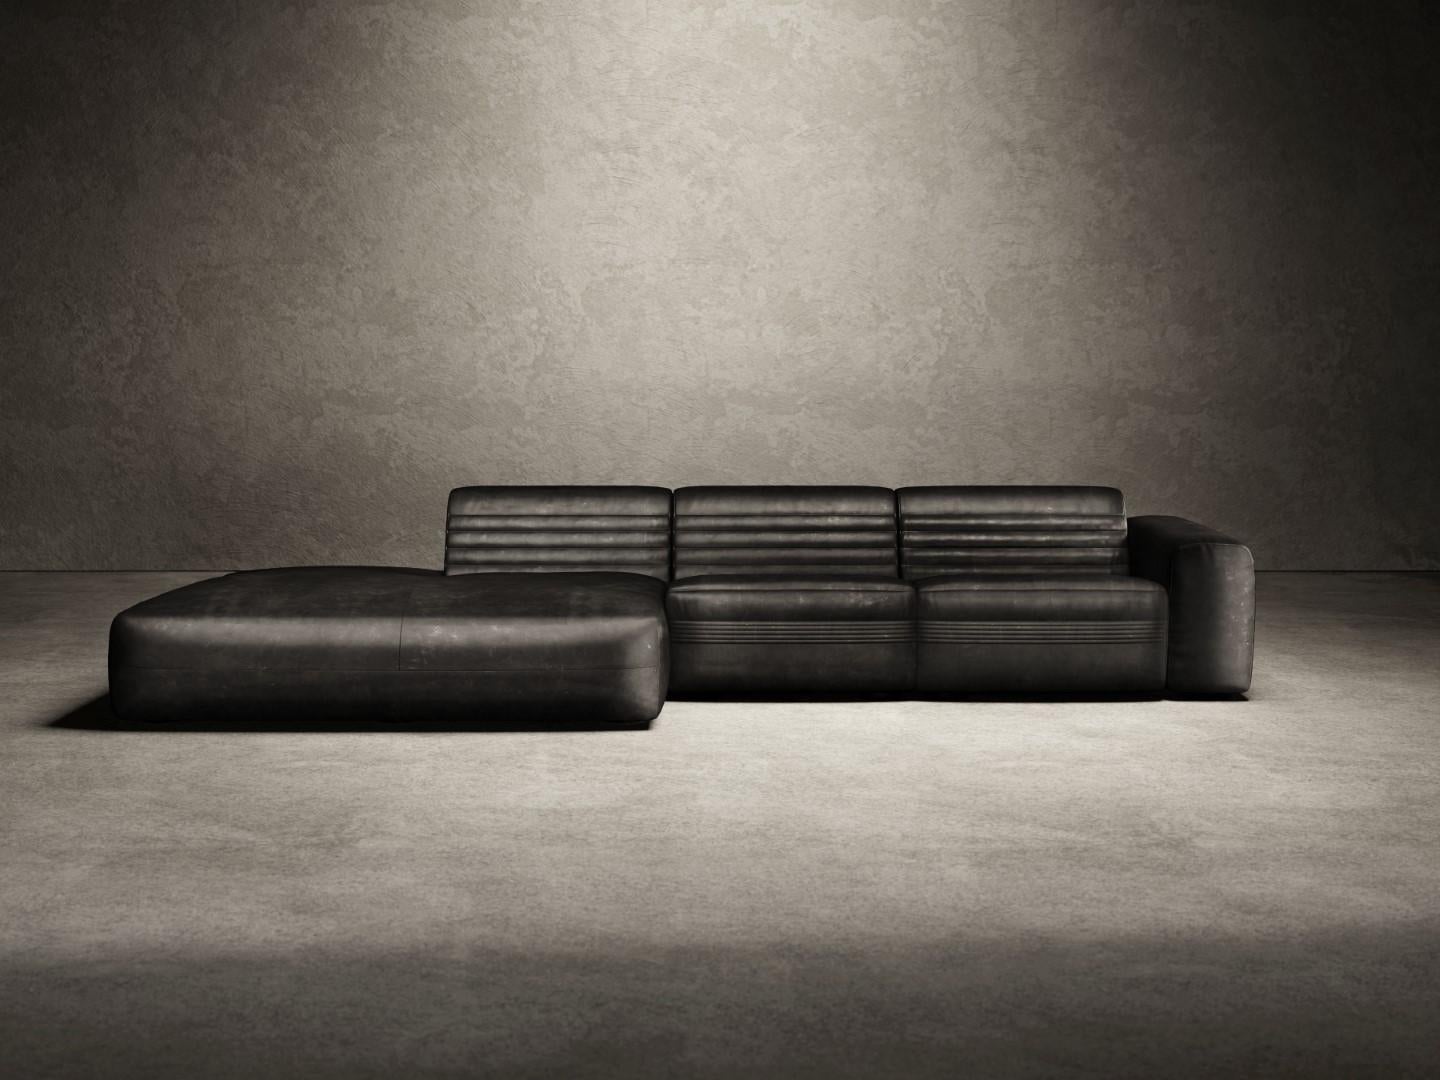 Vicious ist ein modulares Sofa, das aus 4 modularen Elementen besteht: Endmodul, Mittelmodul, Eckmodul und Chaiselongue. Das Sofa Vicious besteht aus einem Holzrahmen, der mit hochverdichtetem, geschäumtem Polyurethan gepolstert ist, und einer